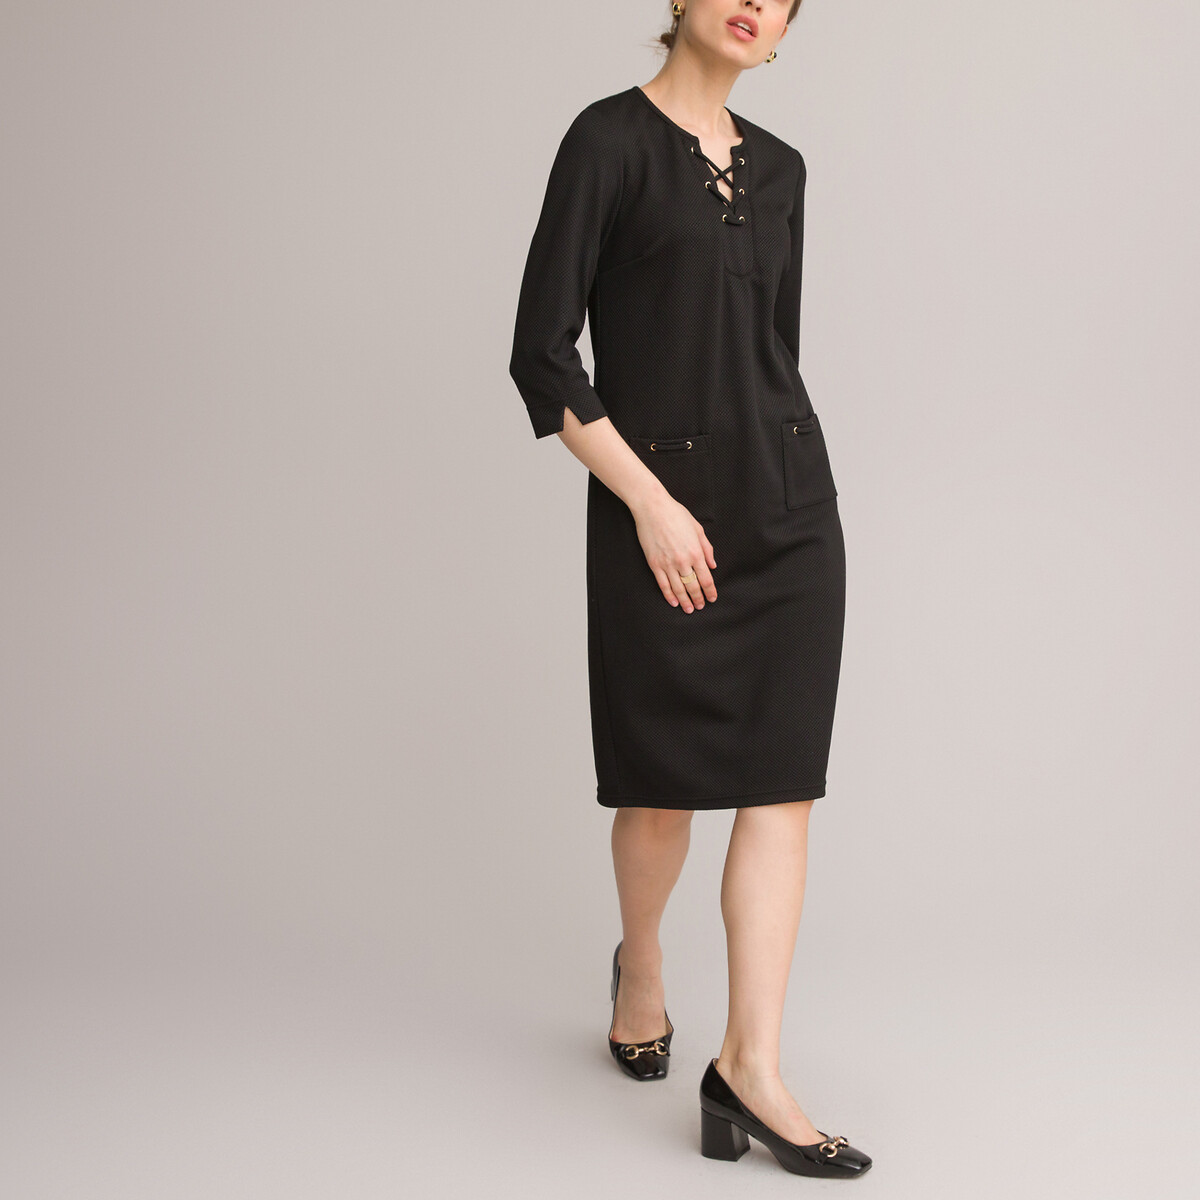 Платье ANNE WEYBURN Платье Прямое средней длины рукава 34 48 черный, размер 48 - фото 2